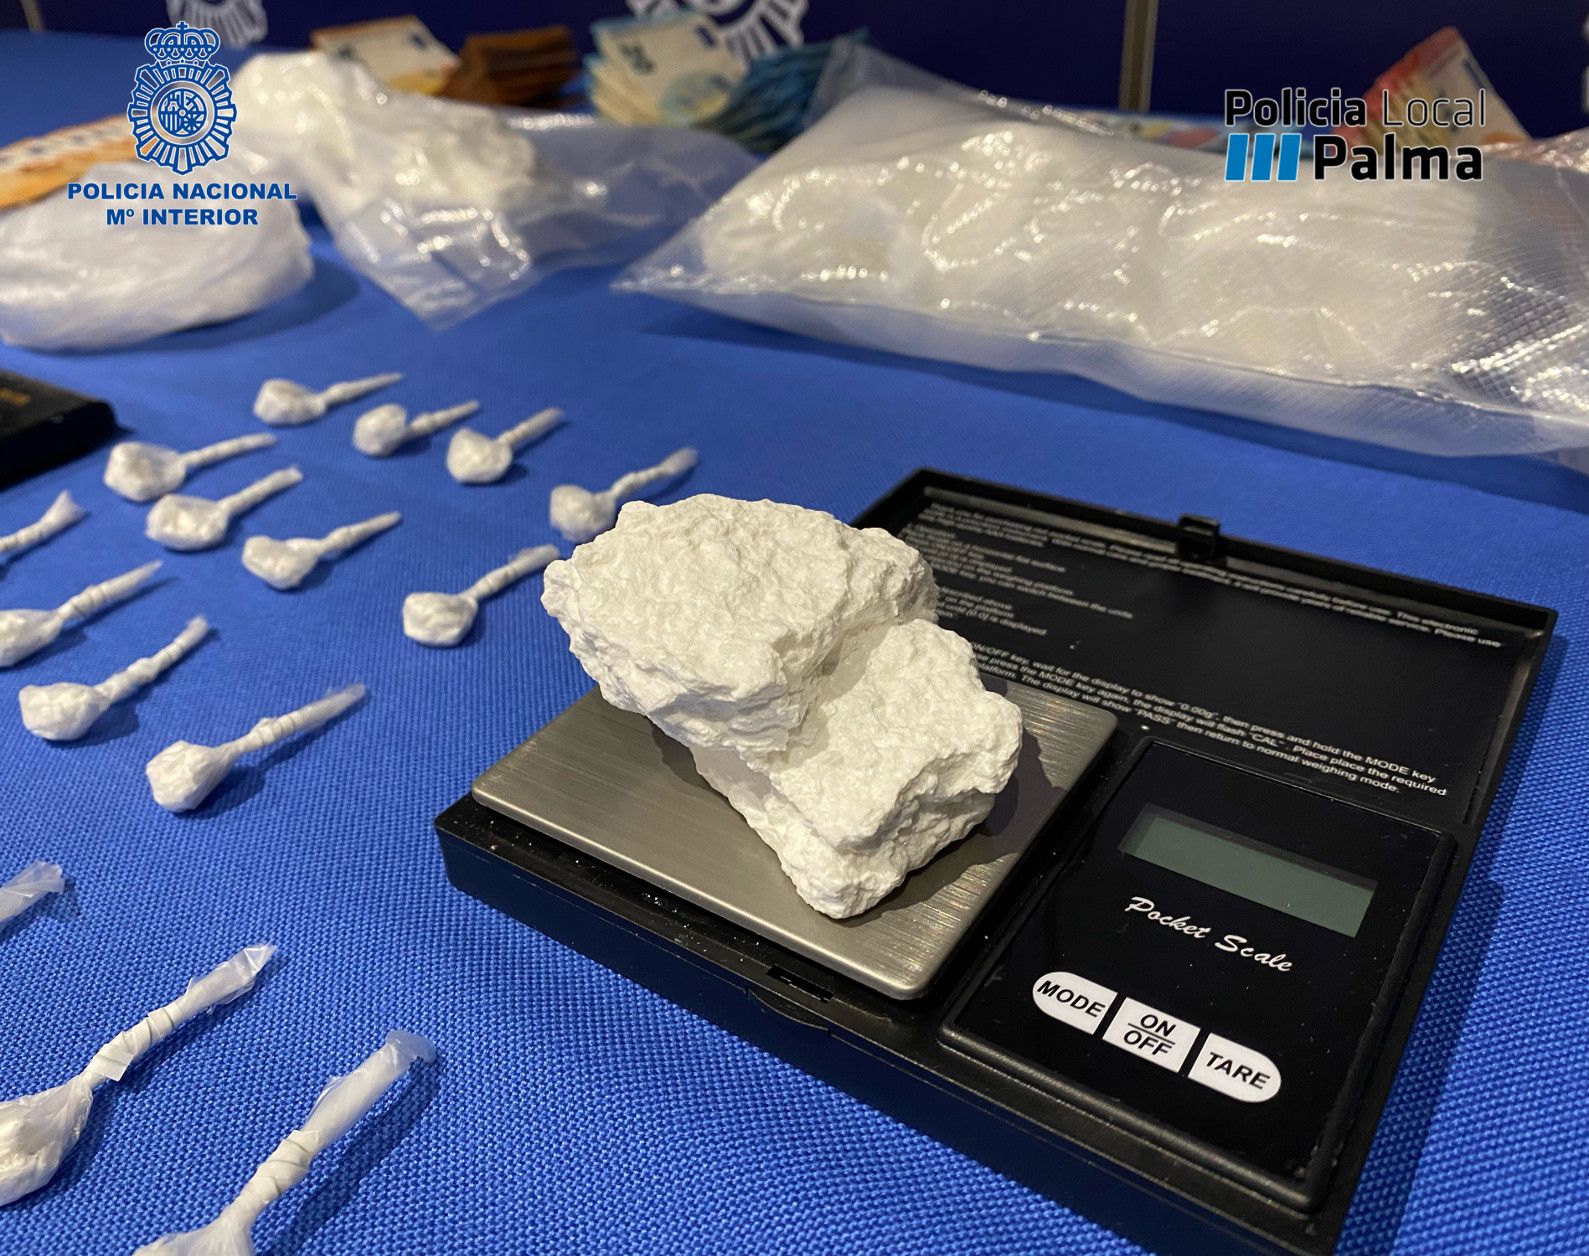 La Policía detiene a cuatro personas por tráfico de drogas y desmantela dos puntos de venta en Palma